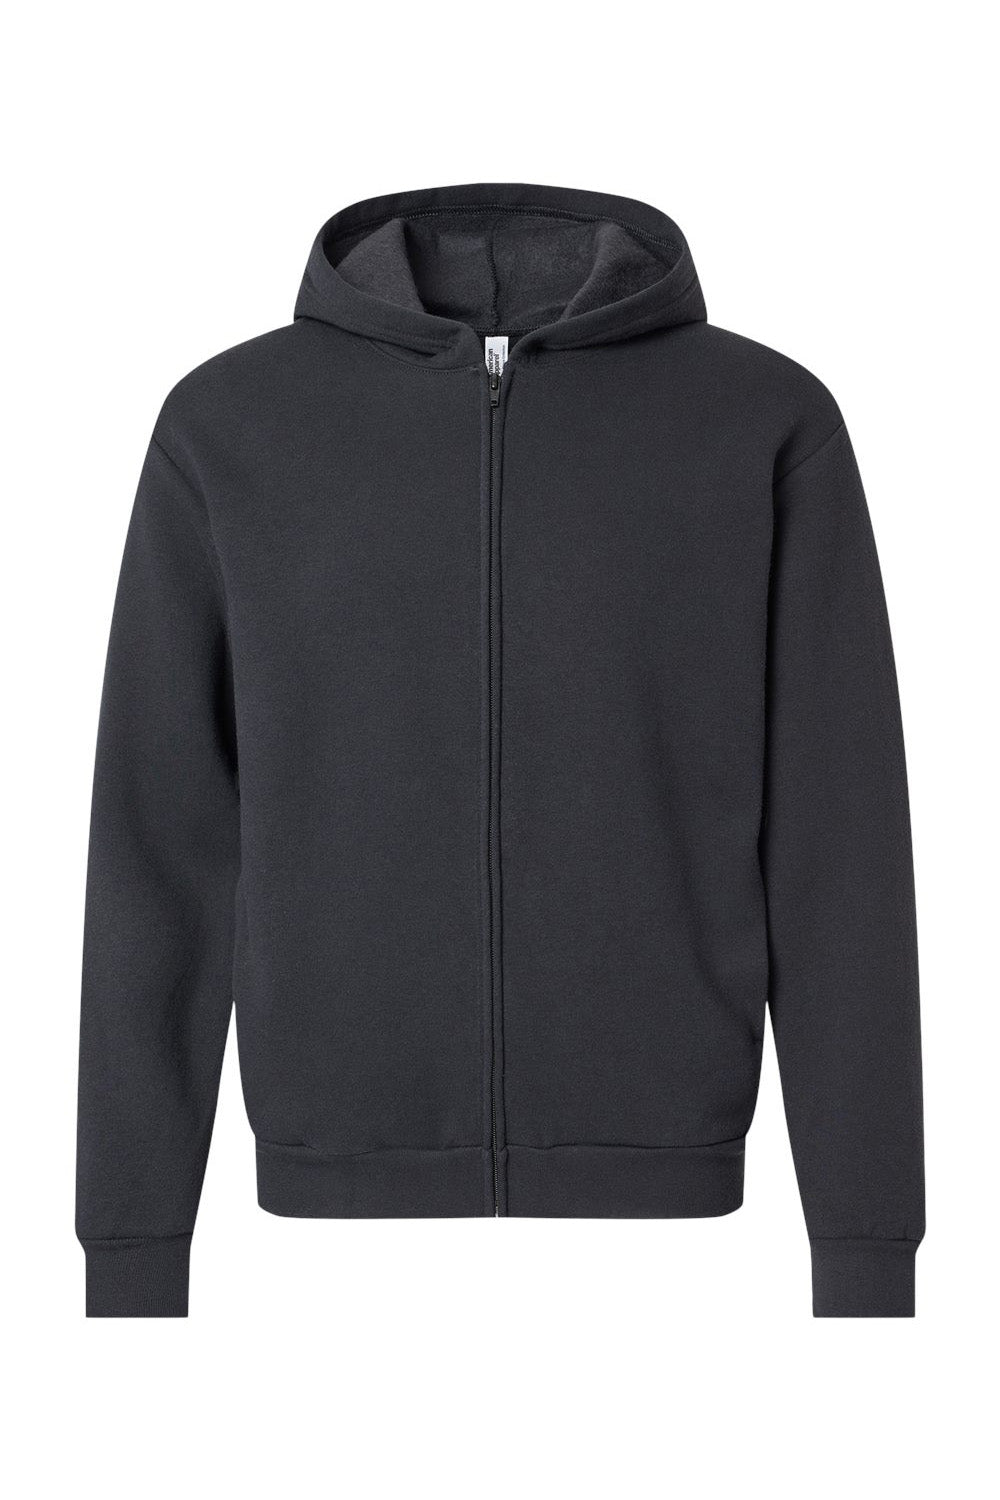 American Apparel RF497 Mens ReFlex Fleece Full Zip Hooded Sweatshirt Hoodie Black Flat Front